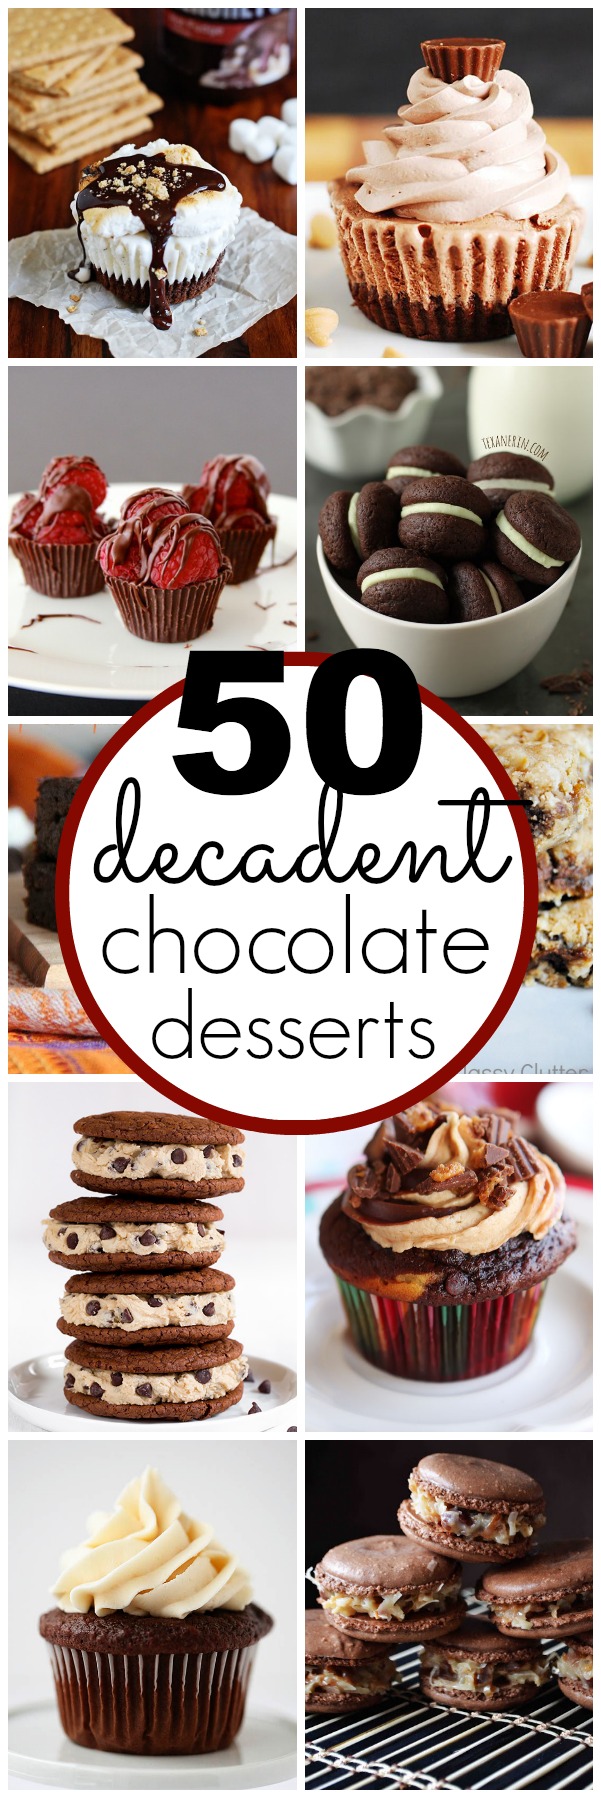 50 Decadent Chocolate Desserts | www.classyclutter.net